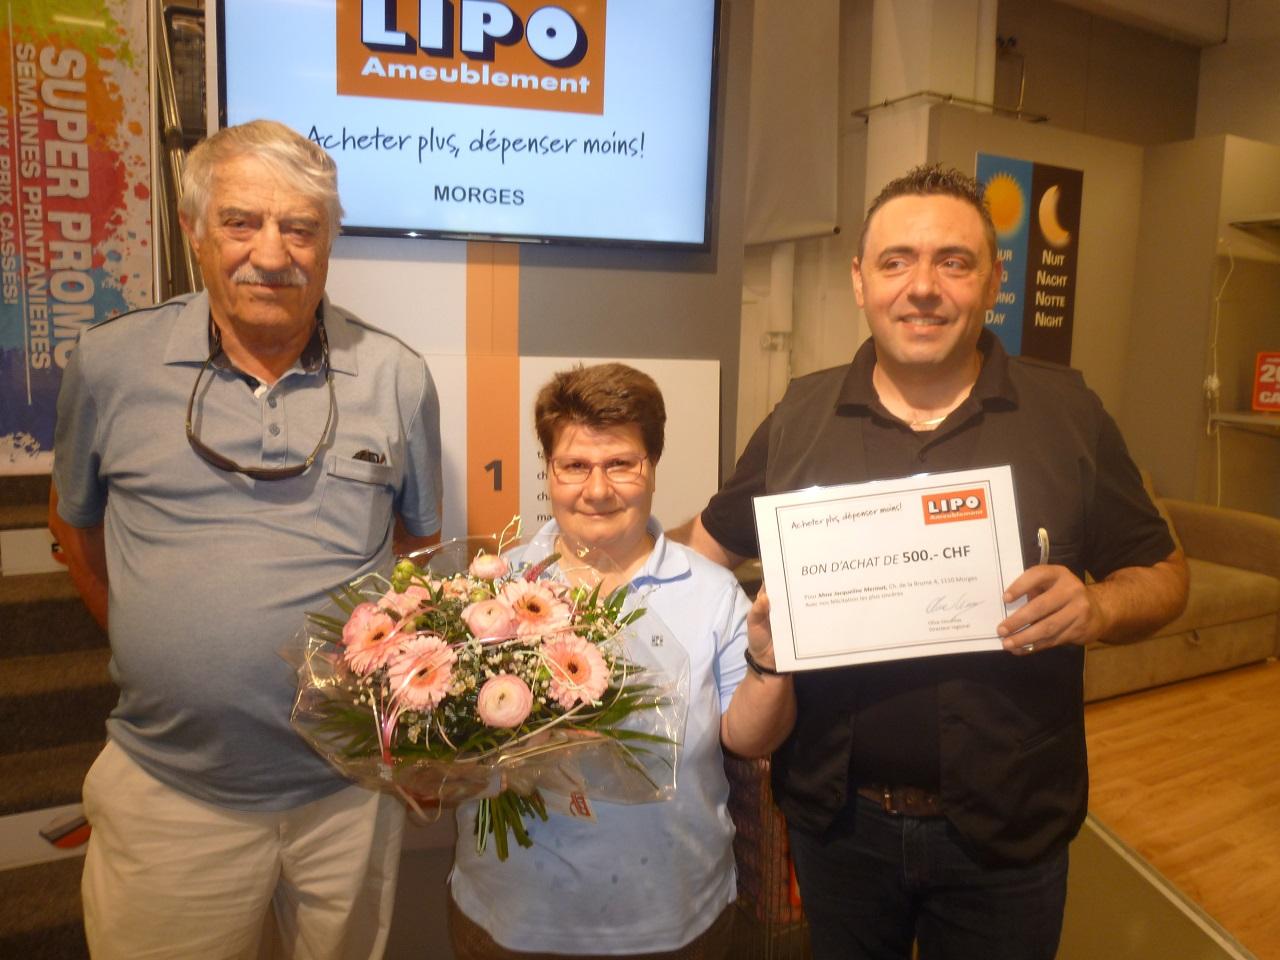 Aux côtés du président de la section Mario Golfetto et du directeur de la succursale LIPO de Morges, Vincenzo Oliva (à droite), Jacqueline Méri-nat est heureuse de recevoir le bon d'achat des magasins de meubles LIPO.